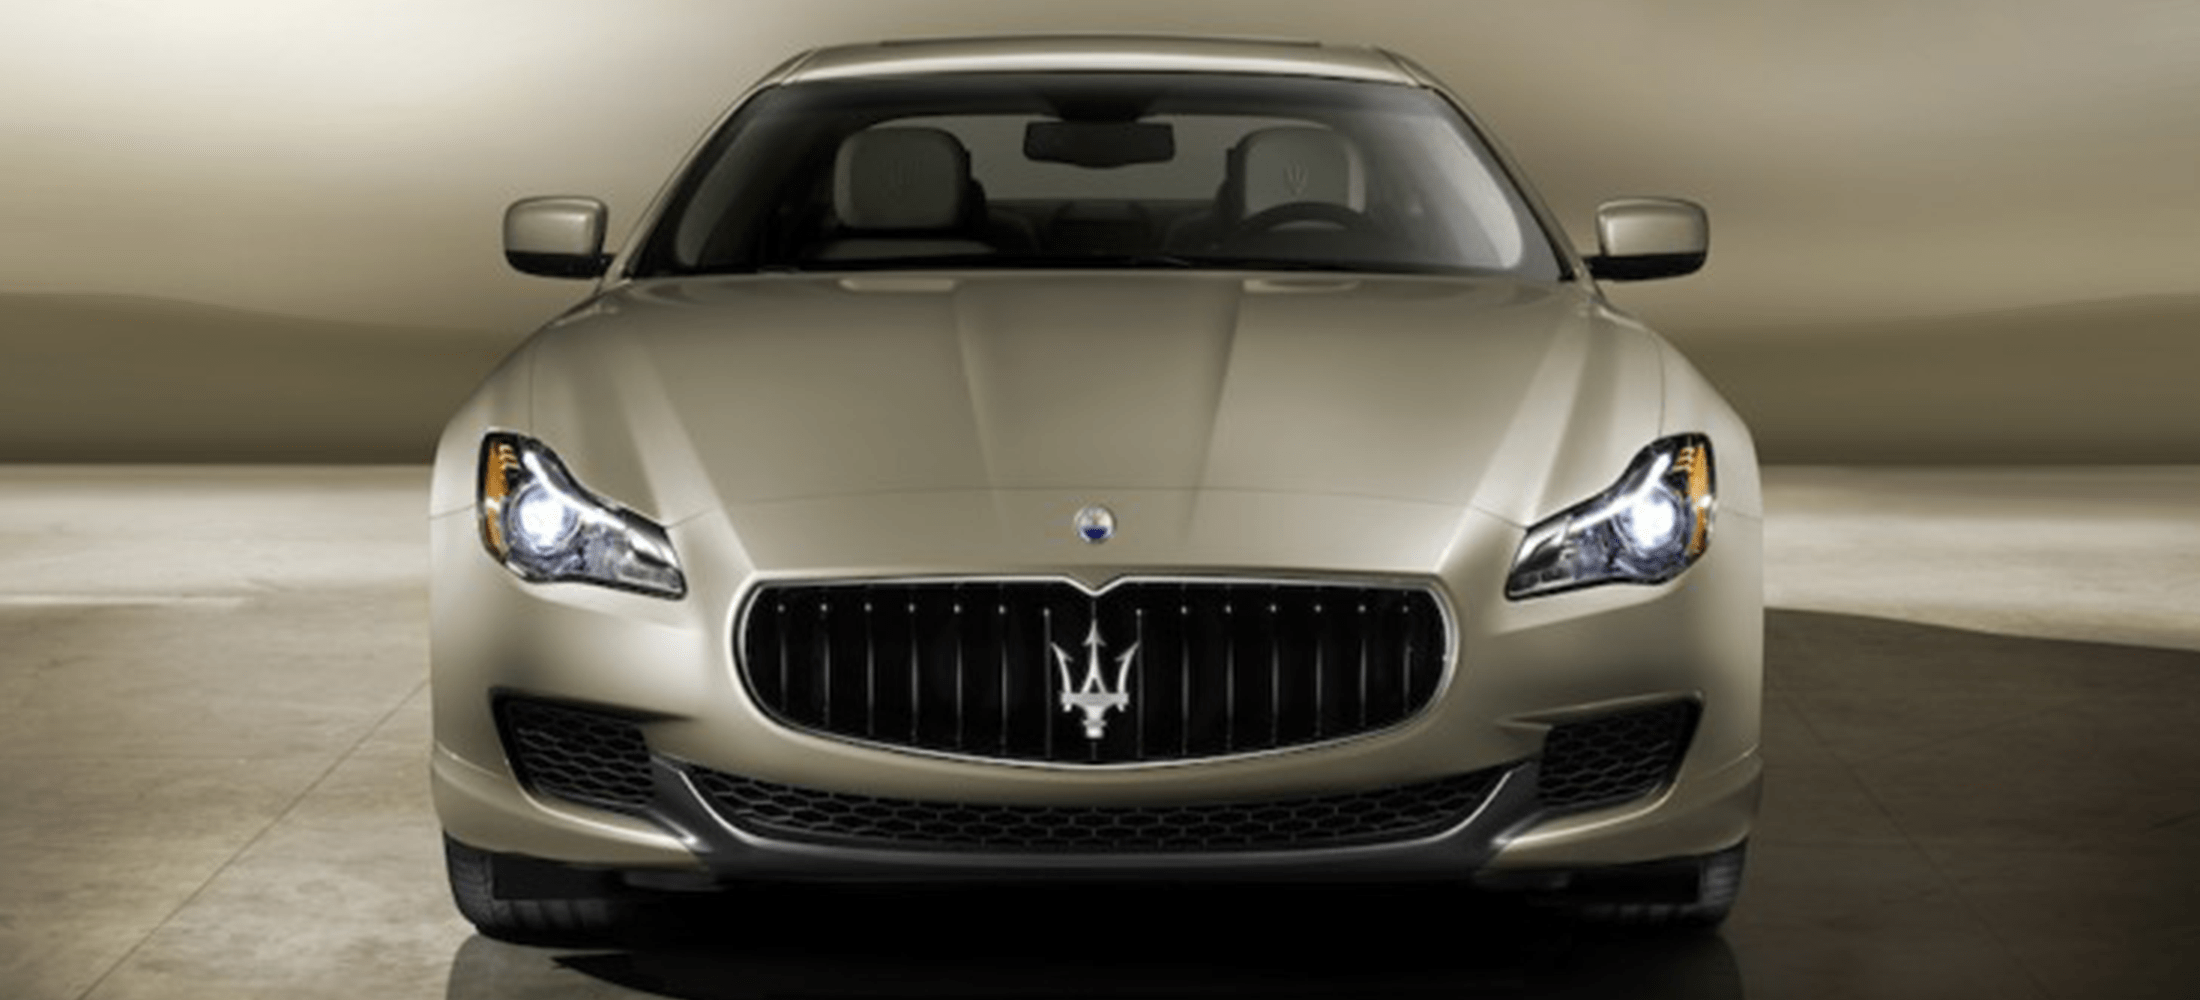 Maserati Quattroporte Front